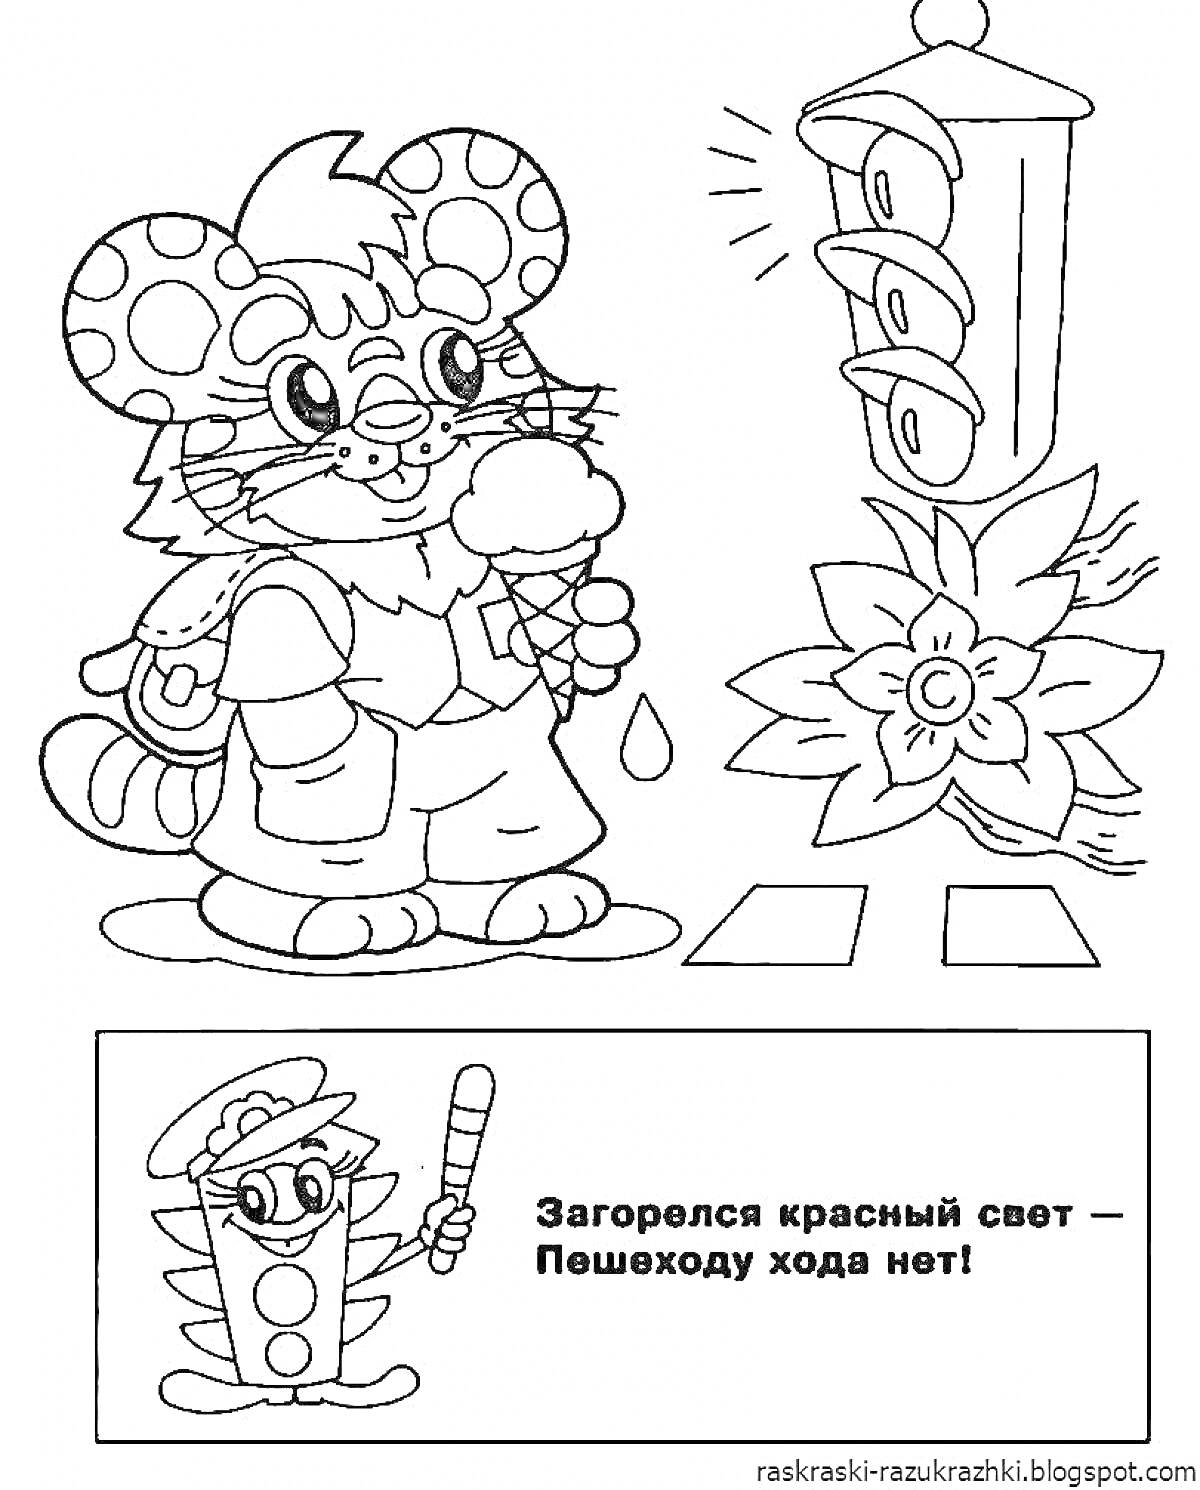 Раскраска Мышонок с мороженым у светофора, цветок, текст с указанием 